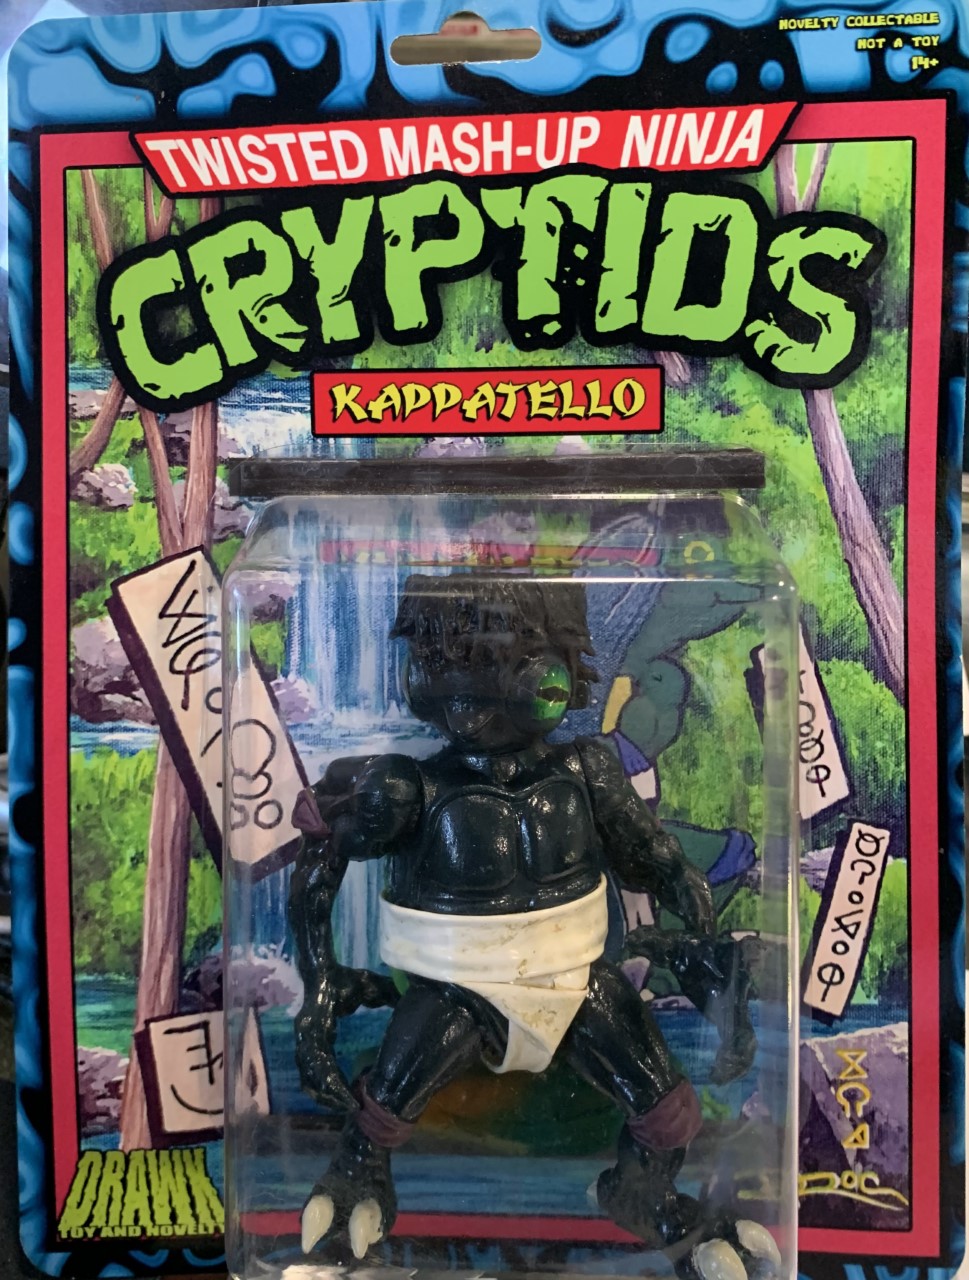 Twisted Mash-Up Ninja Cryptid Kappatello Drawk Toy And Novelty